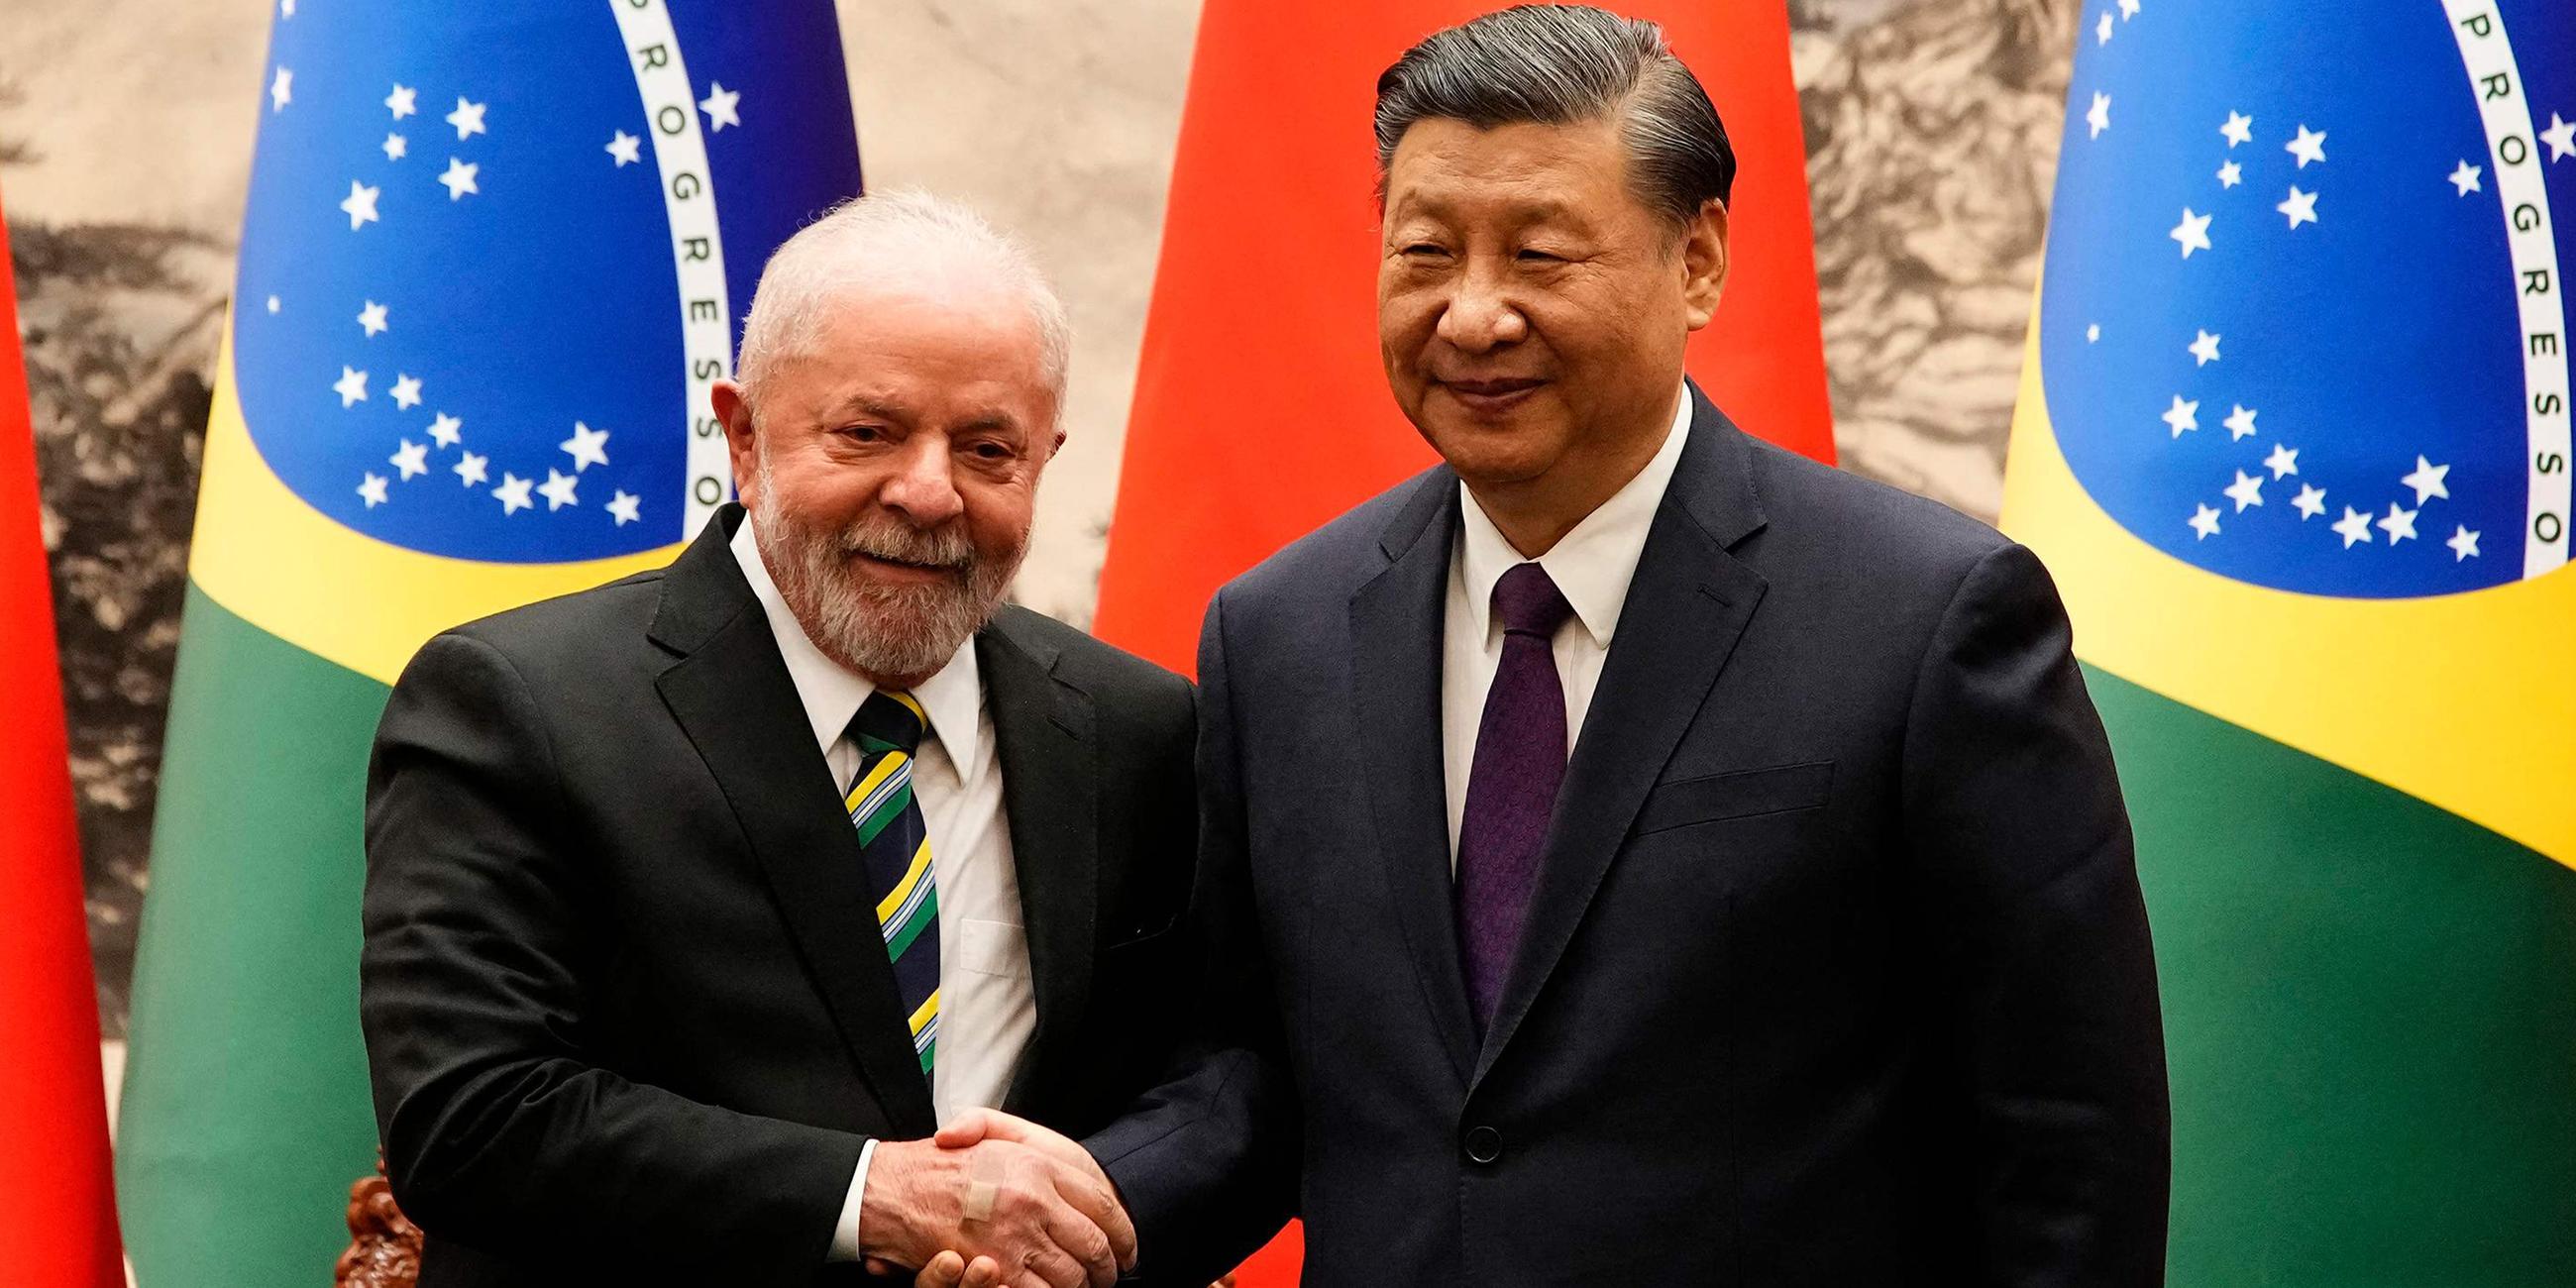 Der chinesische Präsident Xi Jinping (R) und der brasilianische Präsident Luiz Inacio Lula da Silva